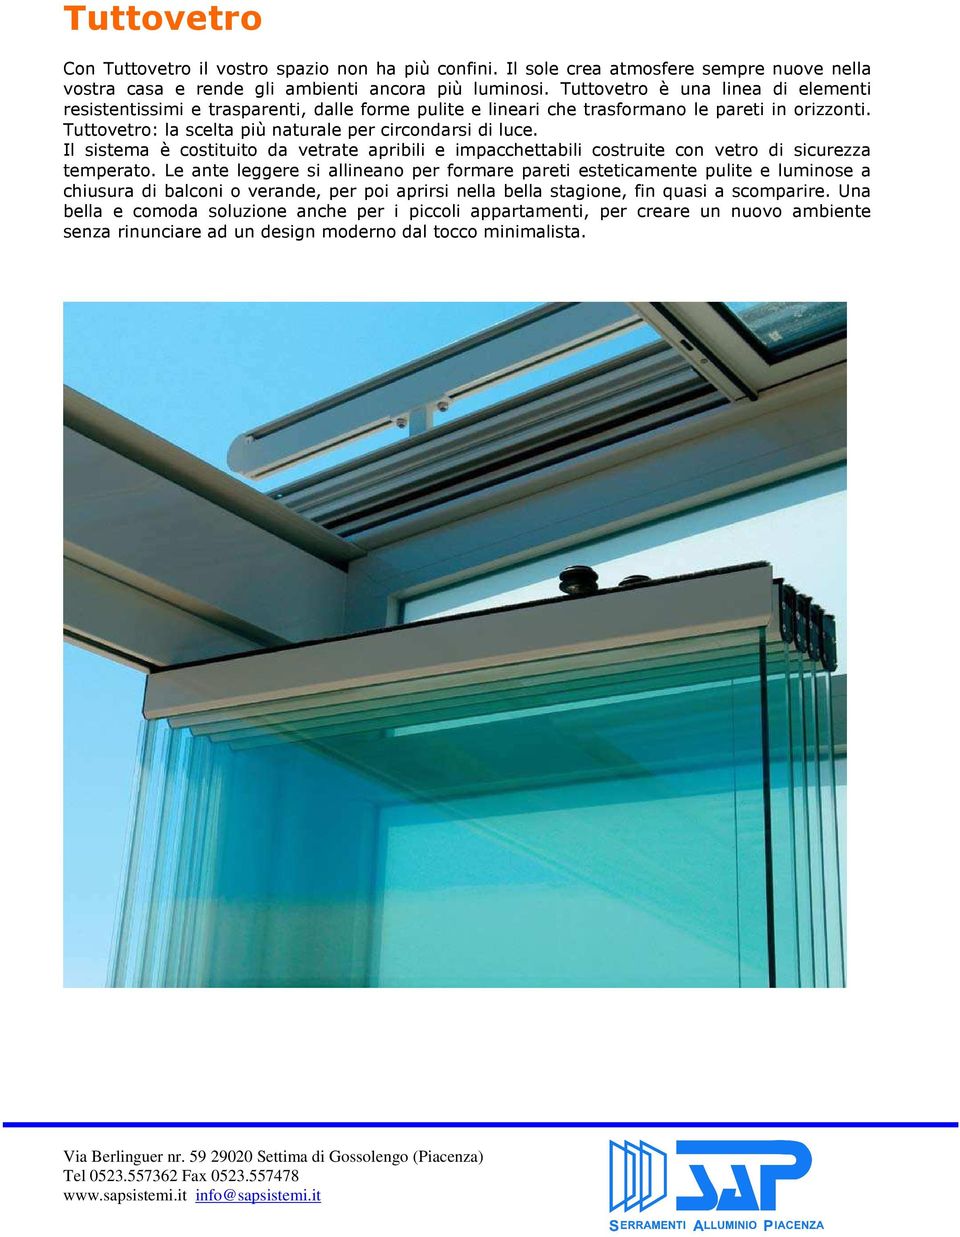 Il sistema è costituito da vetrate apribili e impacchettabili costruite con vetro di sicurezza temperato.